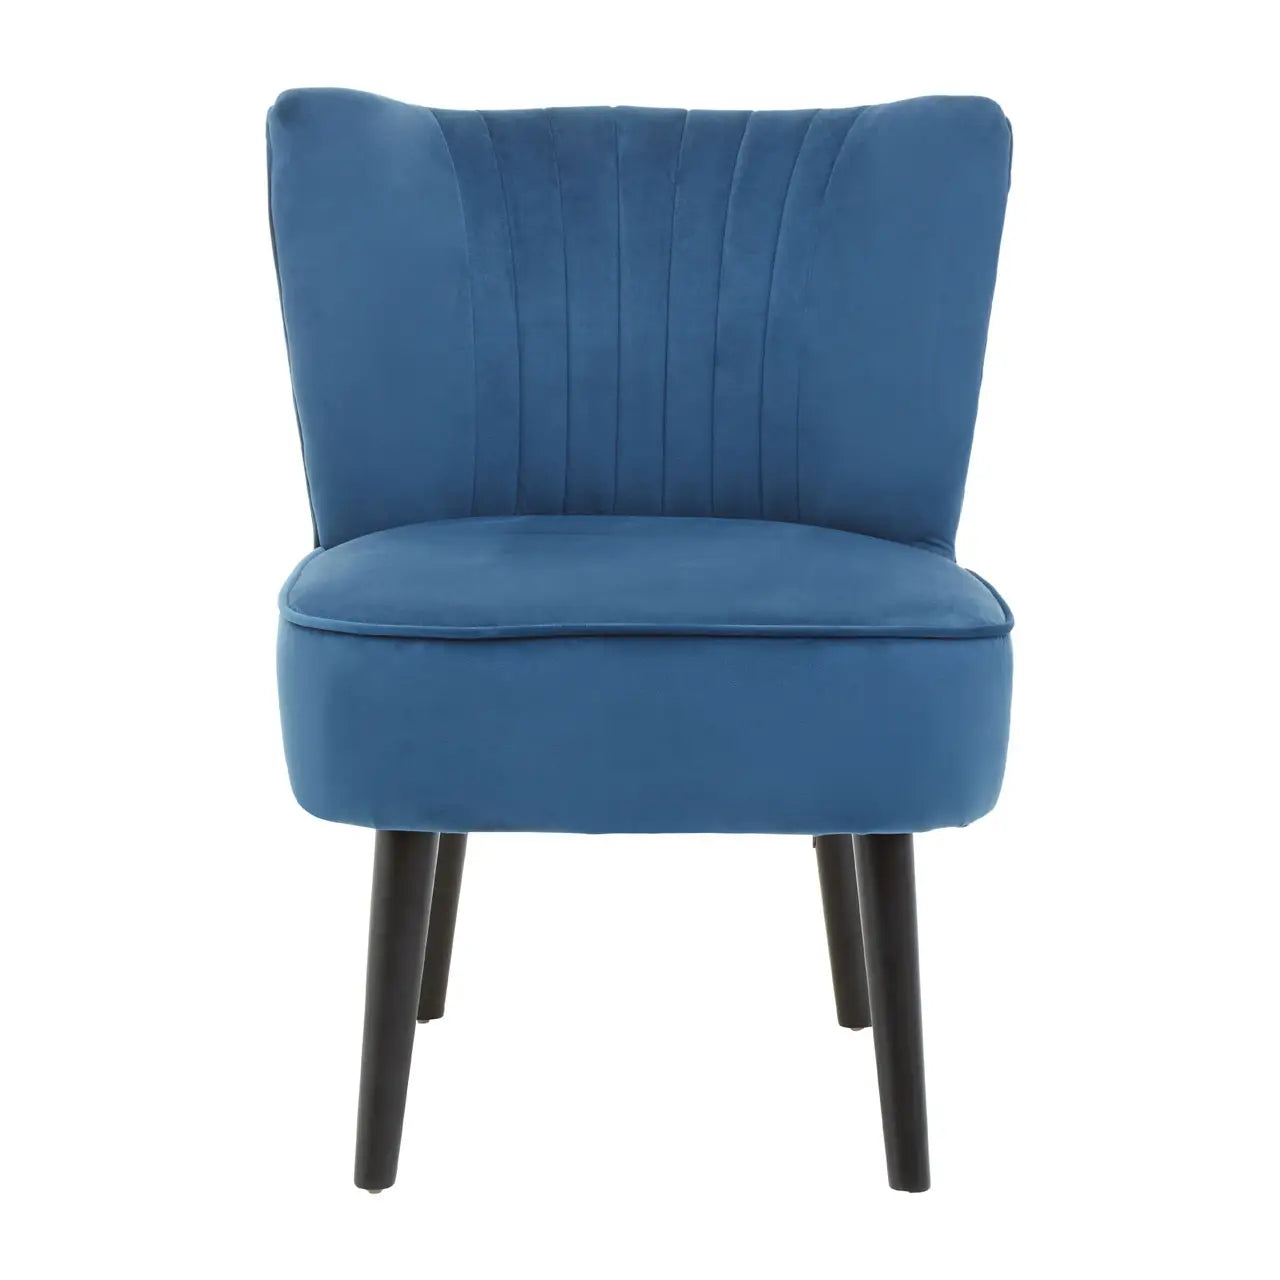 Blue Regents Park Chair